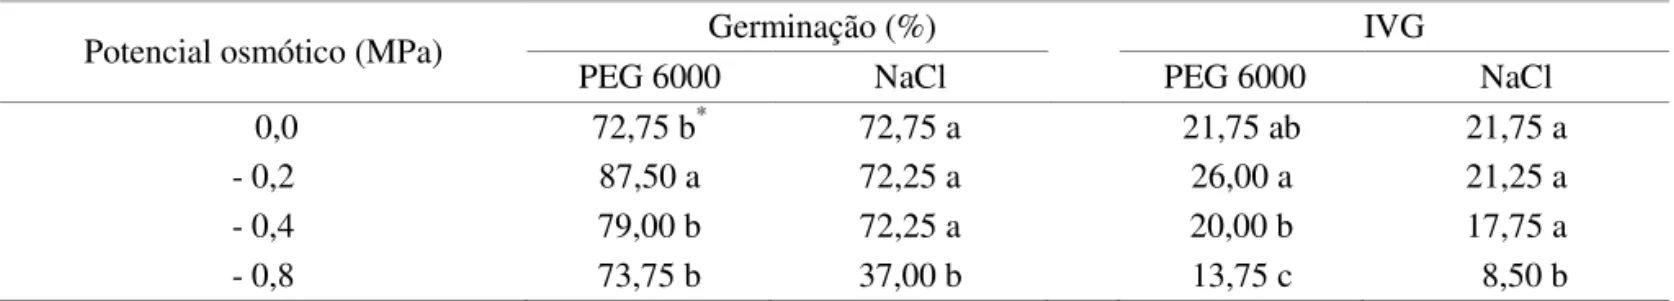 TABELA  1.  Germinação  e  índice  de  velocidade  de  germinação  (IVG)  de  sementes  de  girassol  cultivar  M  735,  submetidas ao estresse hídrico (PEG 6000) e salino (NaCl).